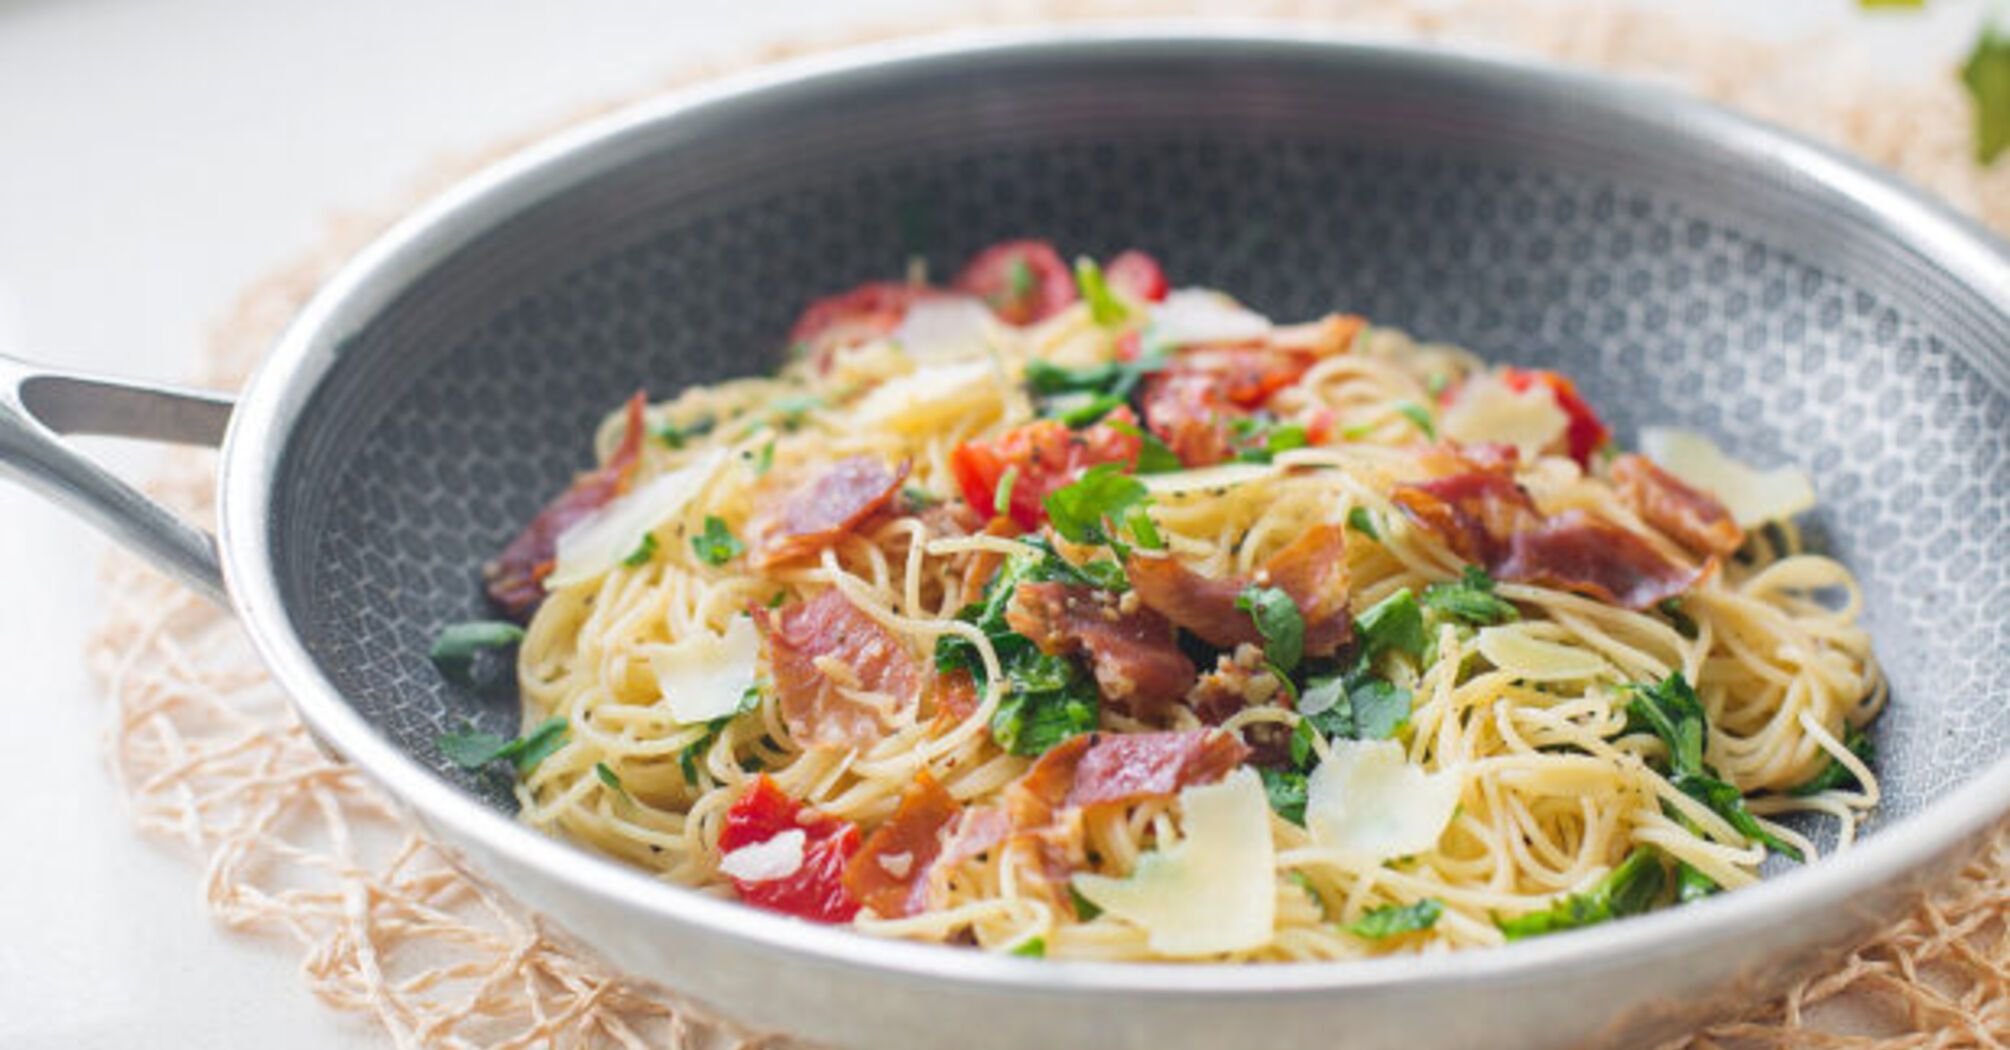 Recipe for pasta with Parma ham